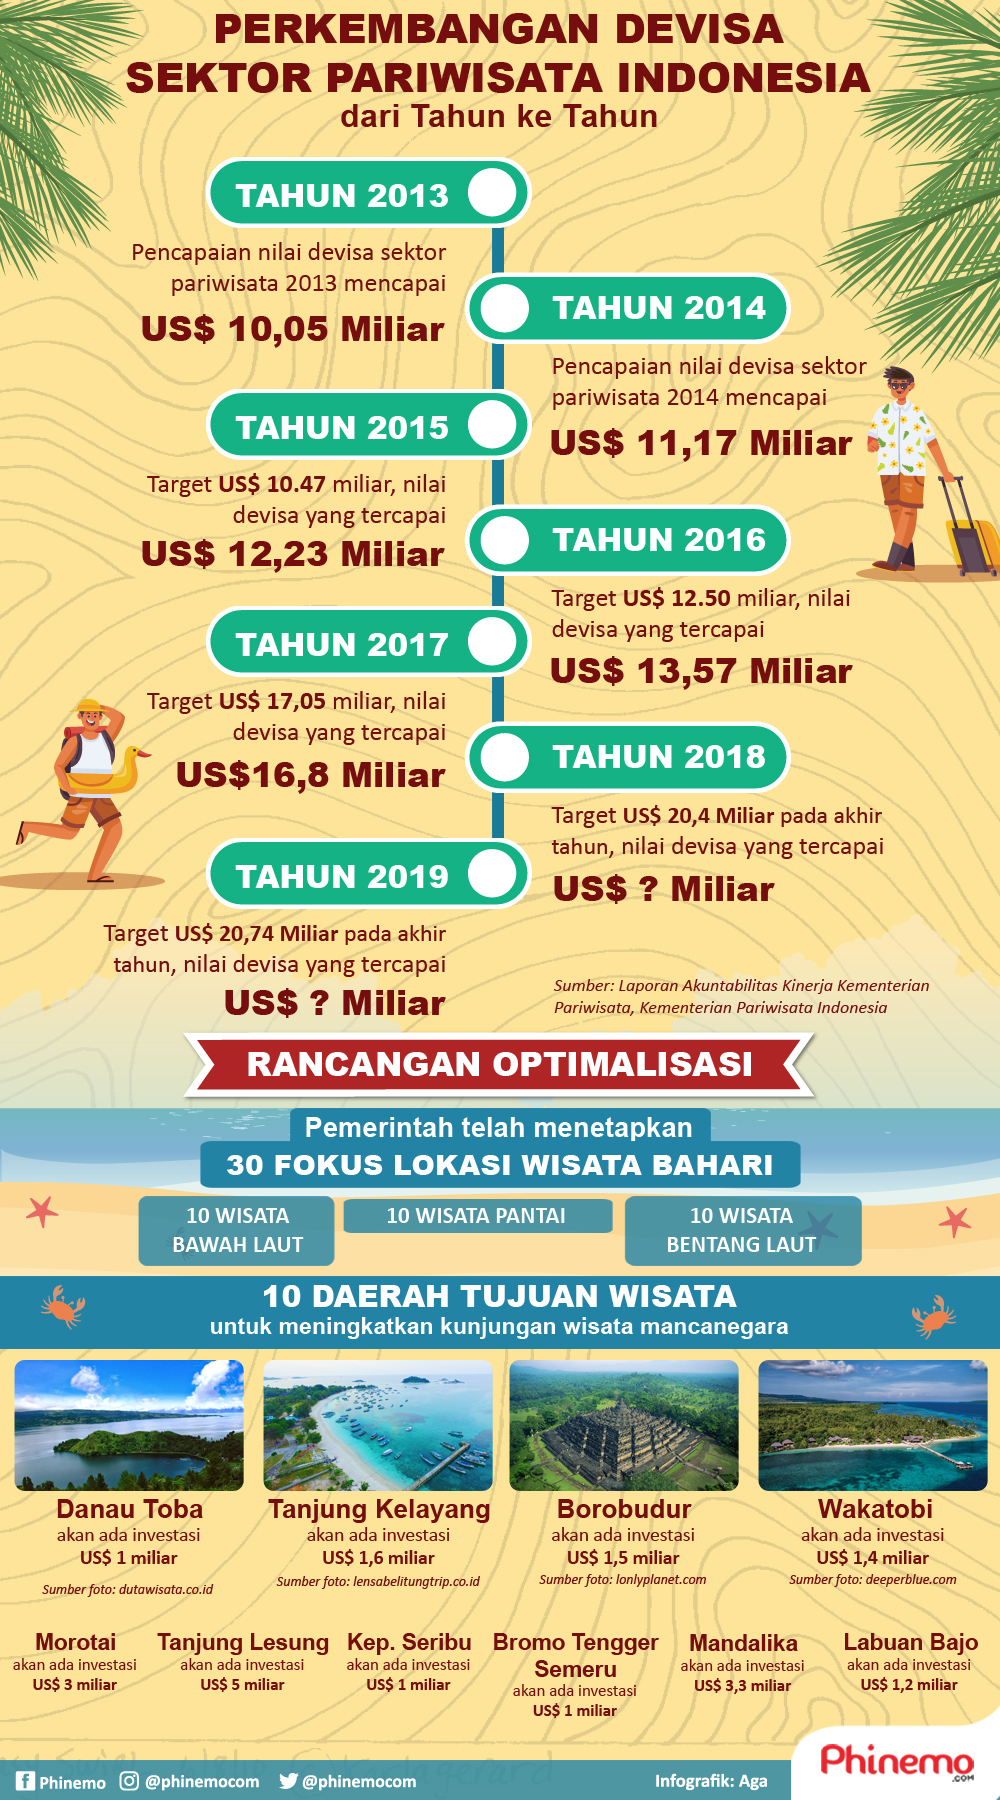 Devisa Sektor Pariwisata Indonesia Terus Naik Tiap Tahun